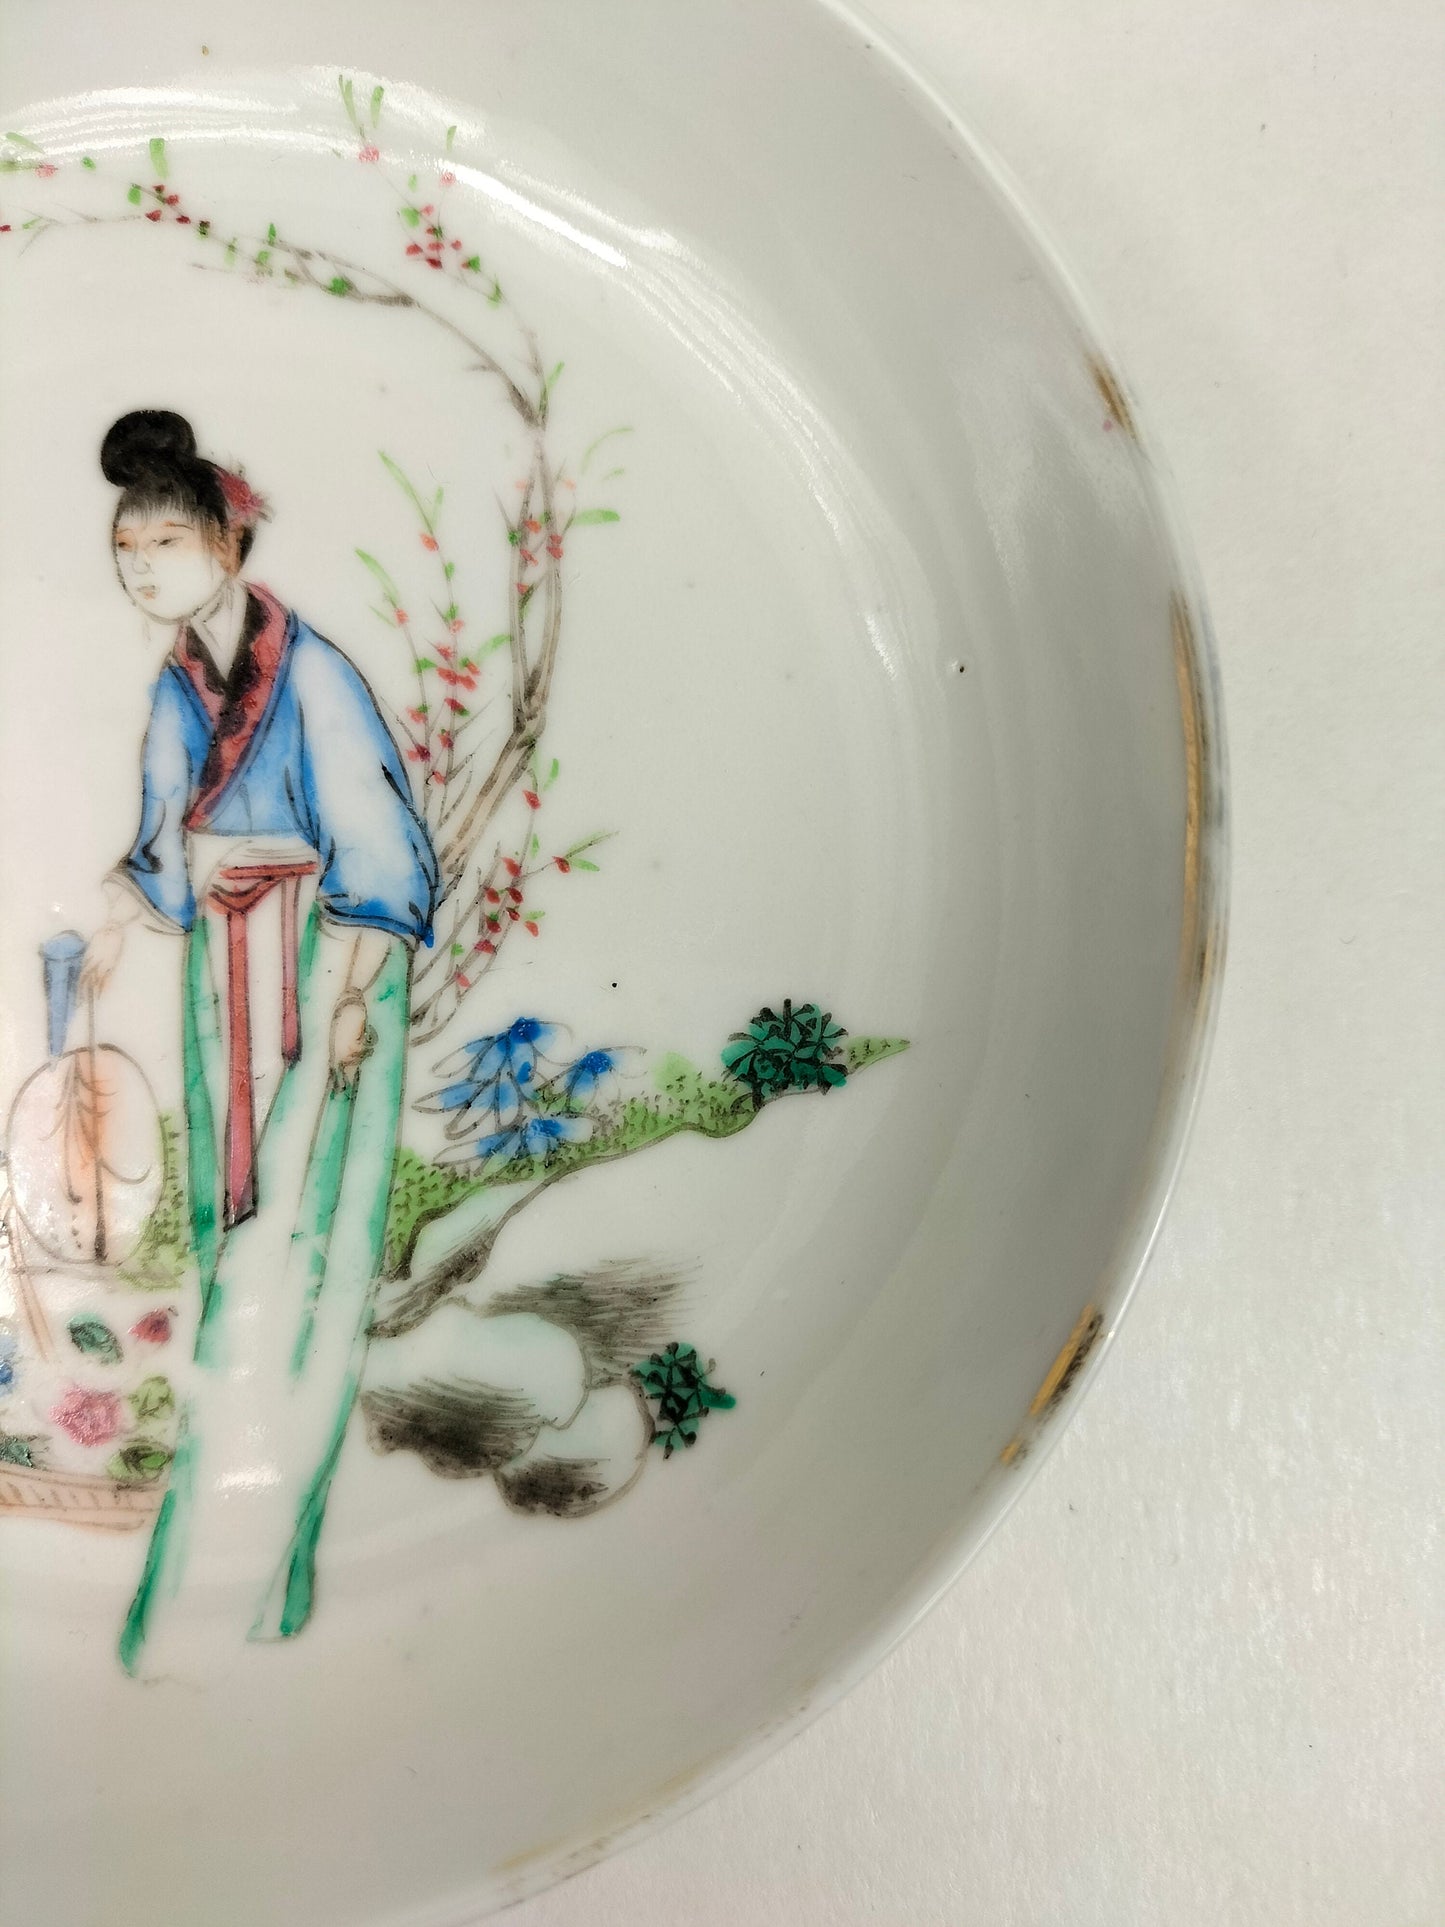 园林场景中饰有中国女士的中国古董盘 // 民国时期（1912-1949）